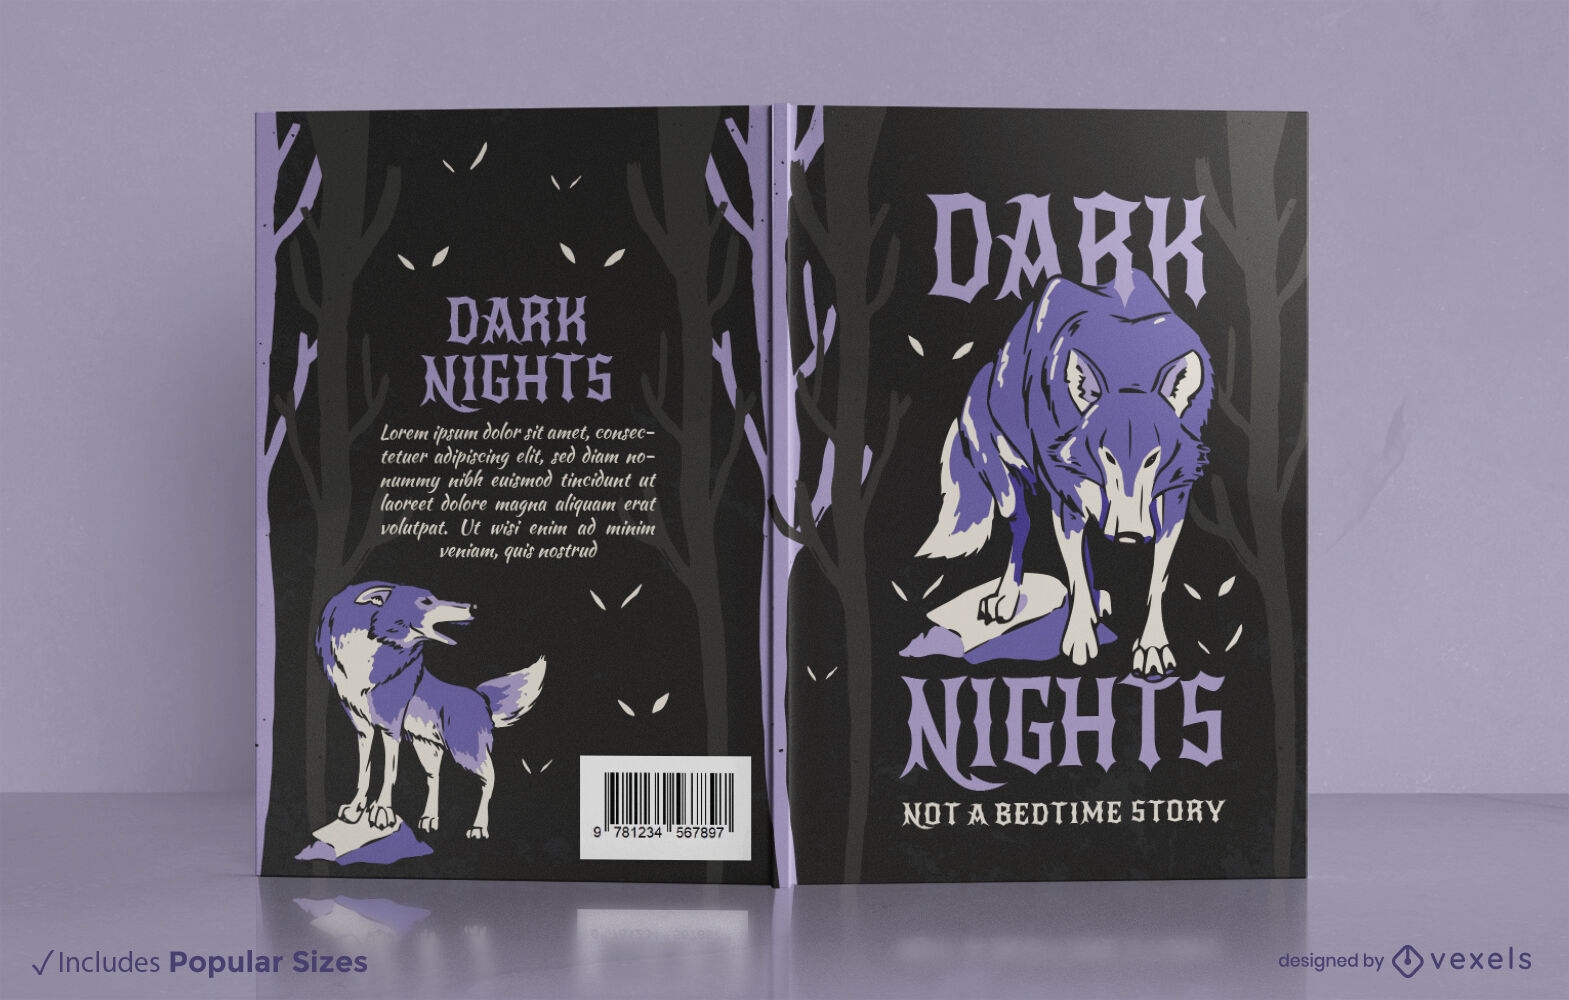 Descarga Vector De Diseño De Portada De Libro De Lobo De Noche Oscura